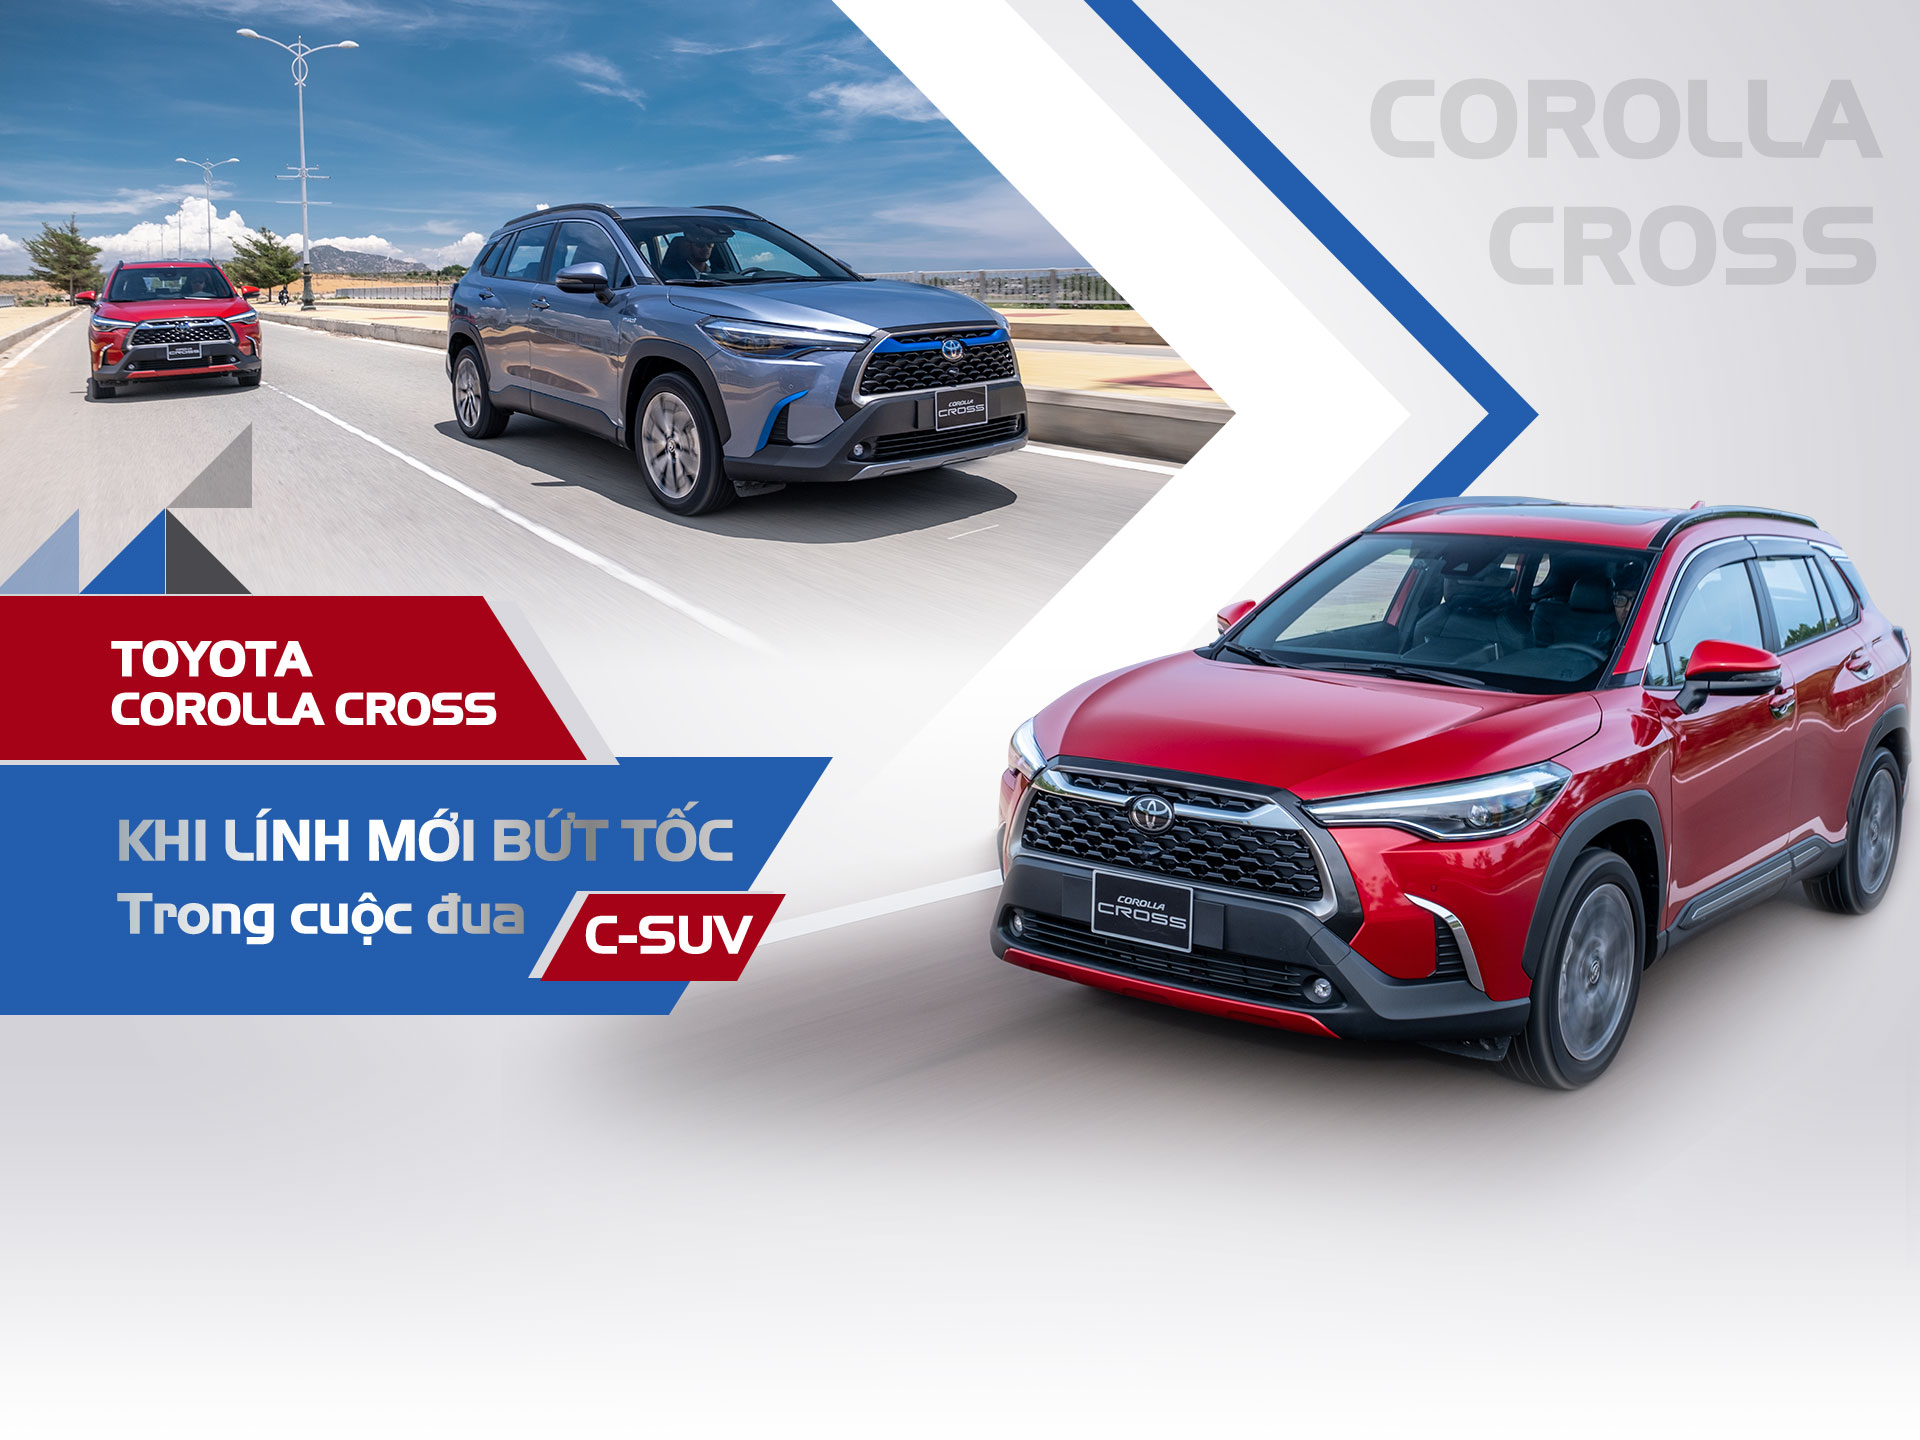 Toyota Corolla Cross: Khi lính mới bứt tốc trong cuộc đua C-SUV - 2